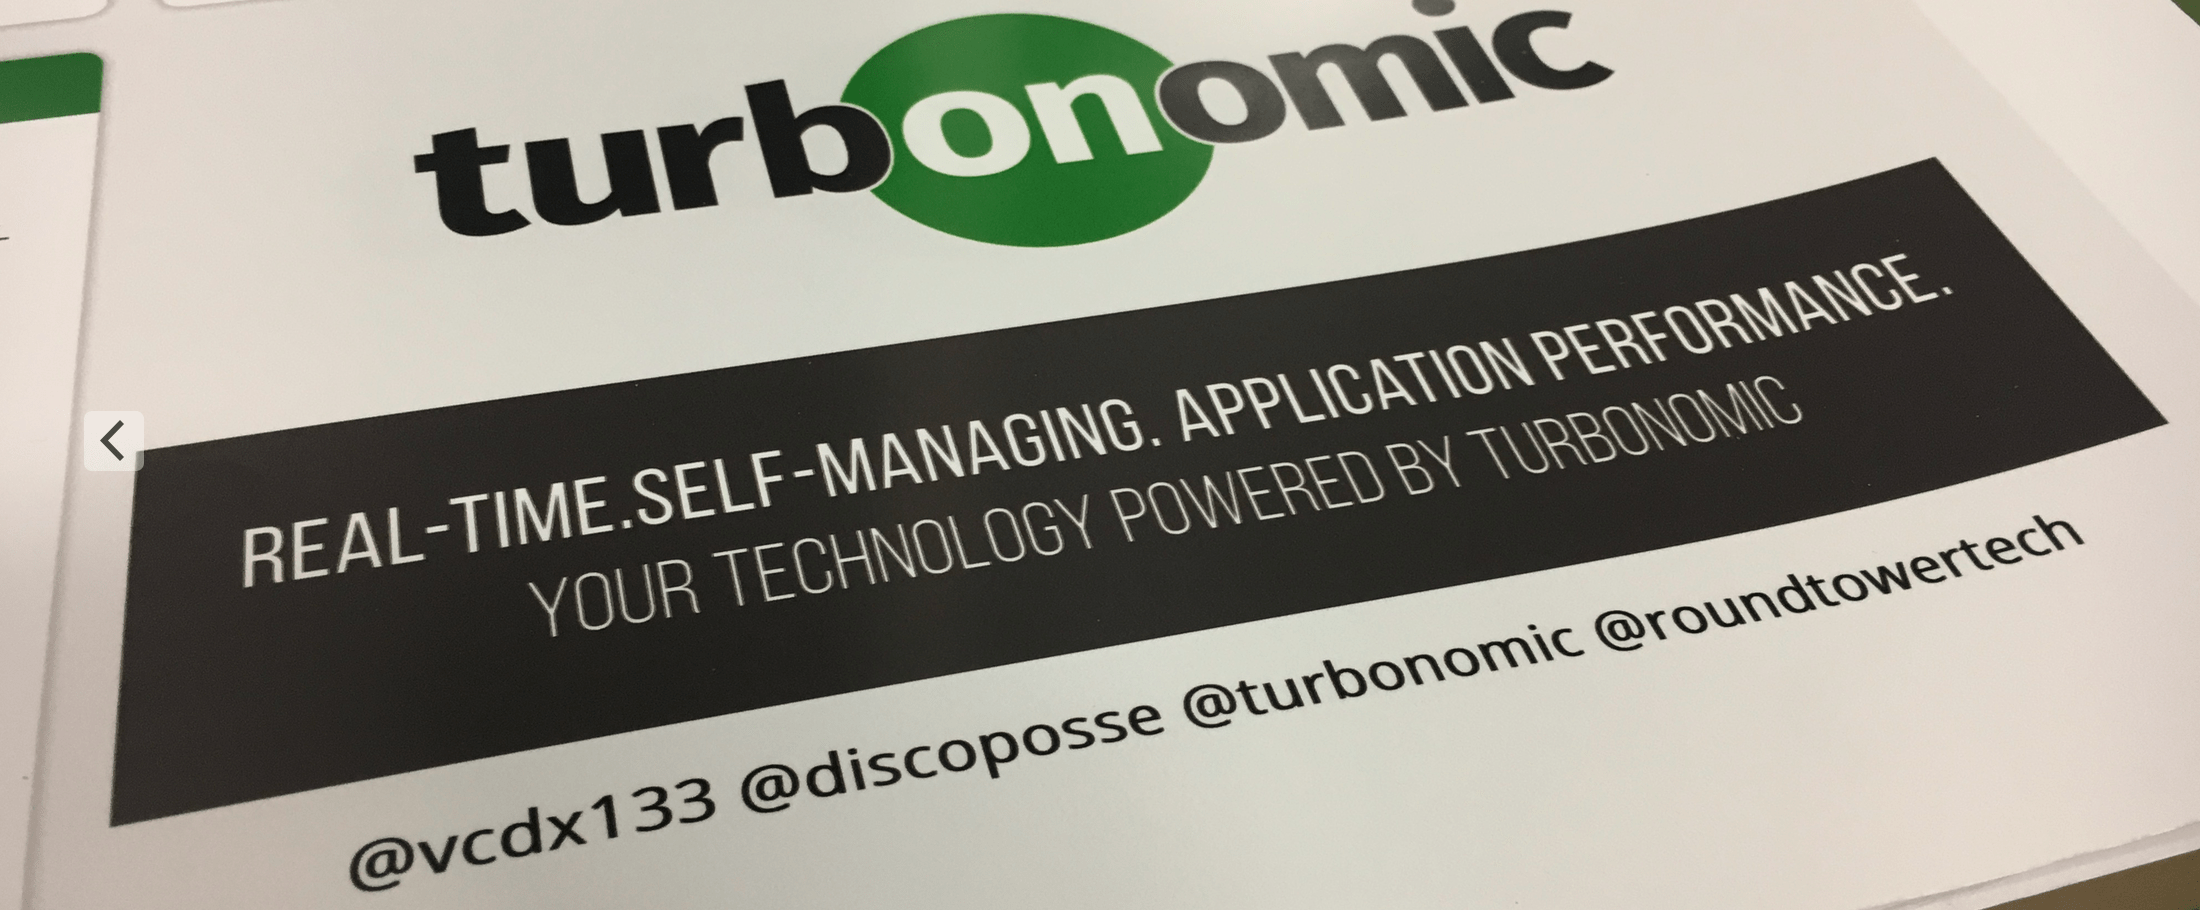 Turbonomic Logo - Turbonomic Technical Poster Goodness